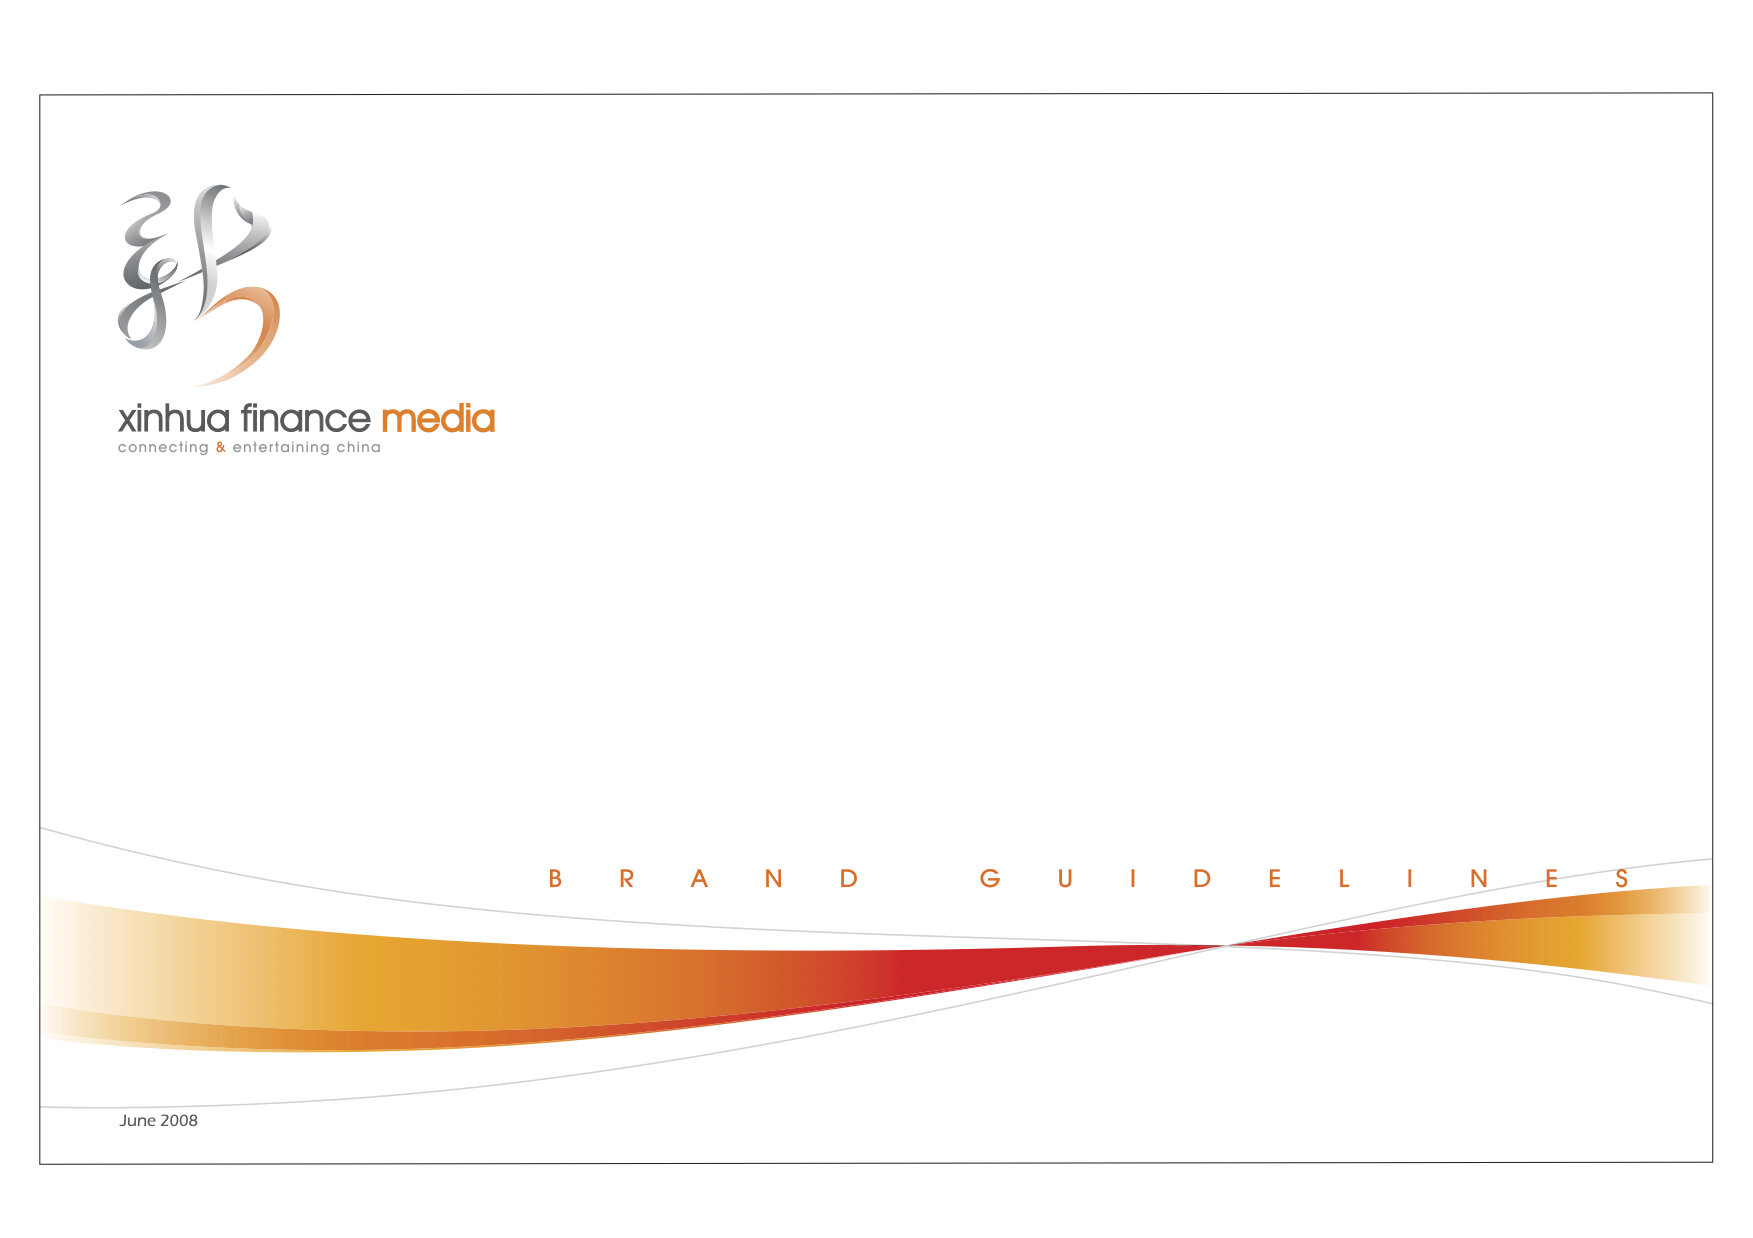 METERA Branding-XFMedia-Brand Guidelines.png